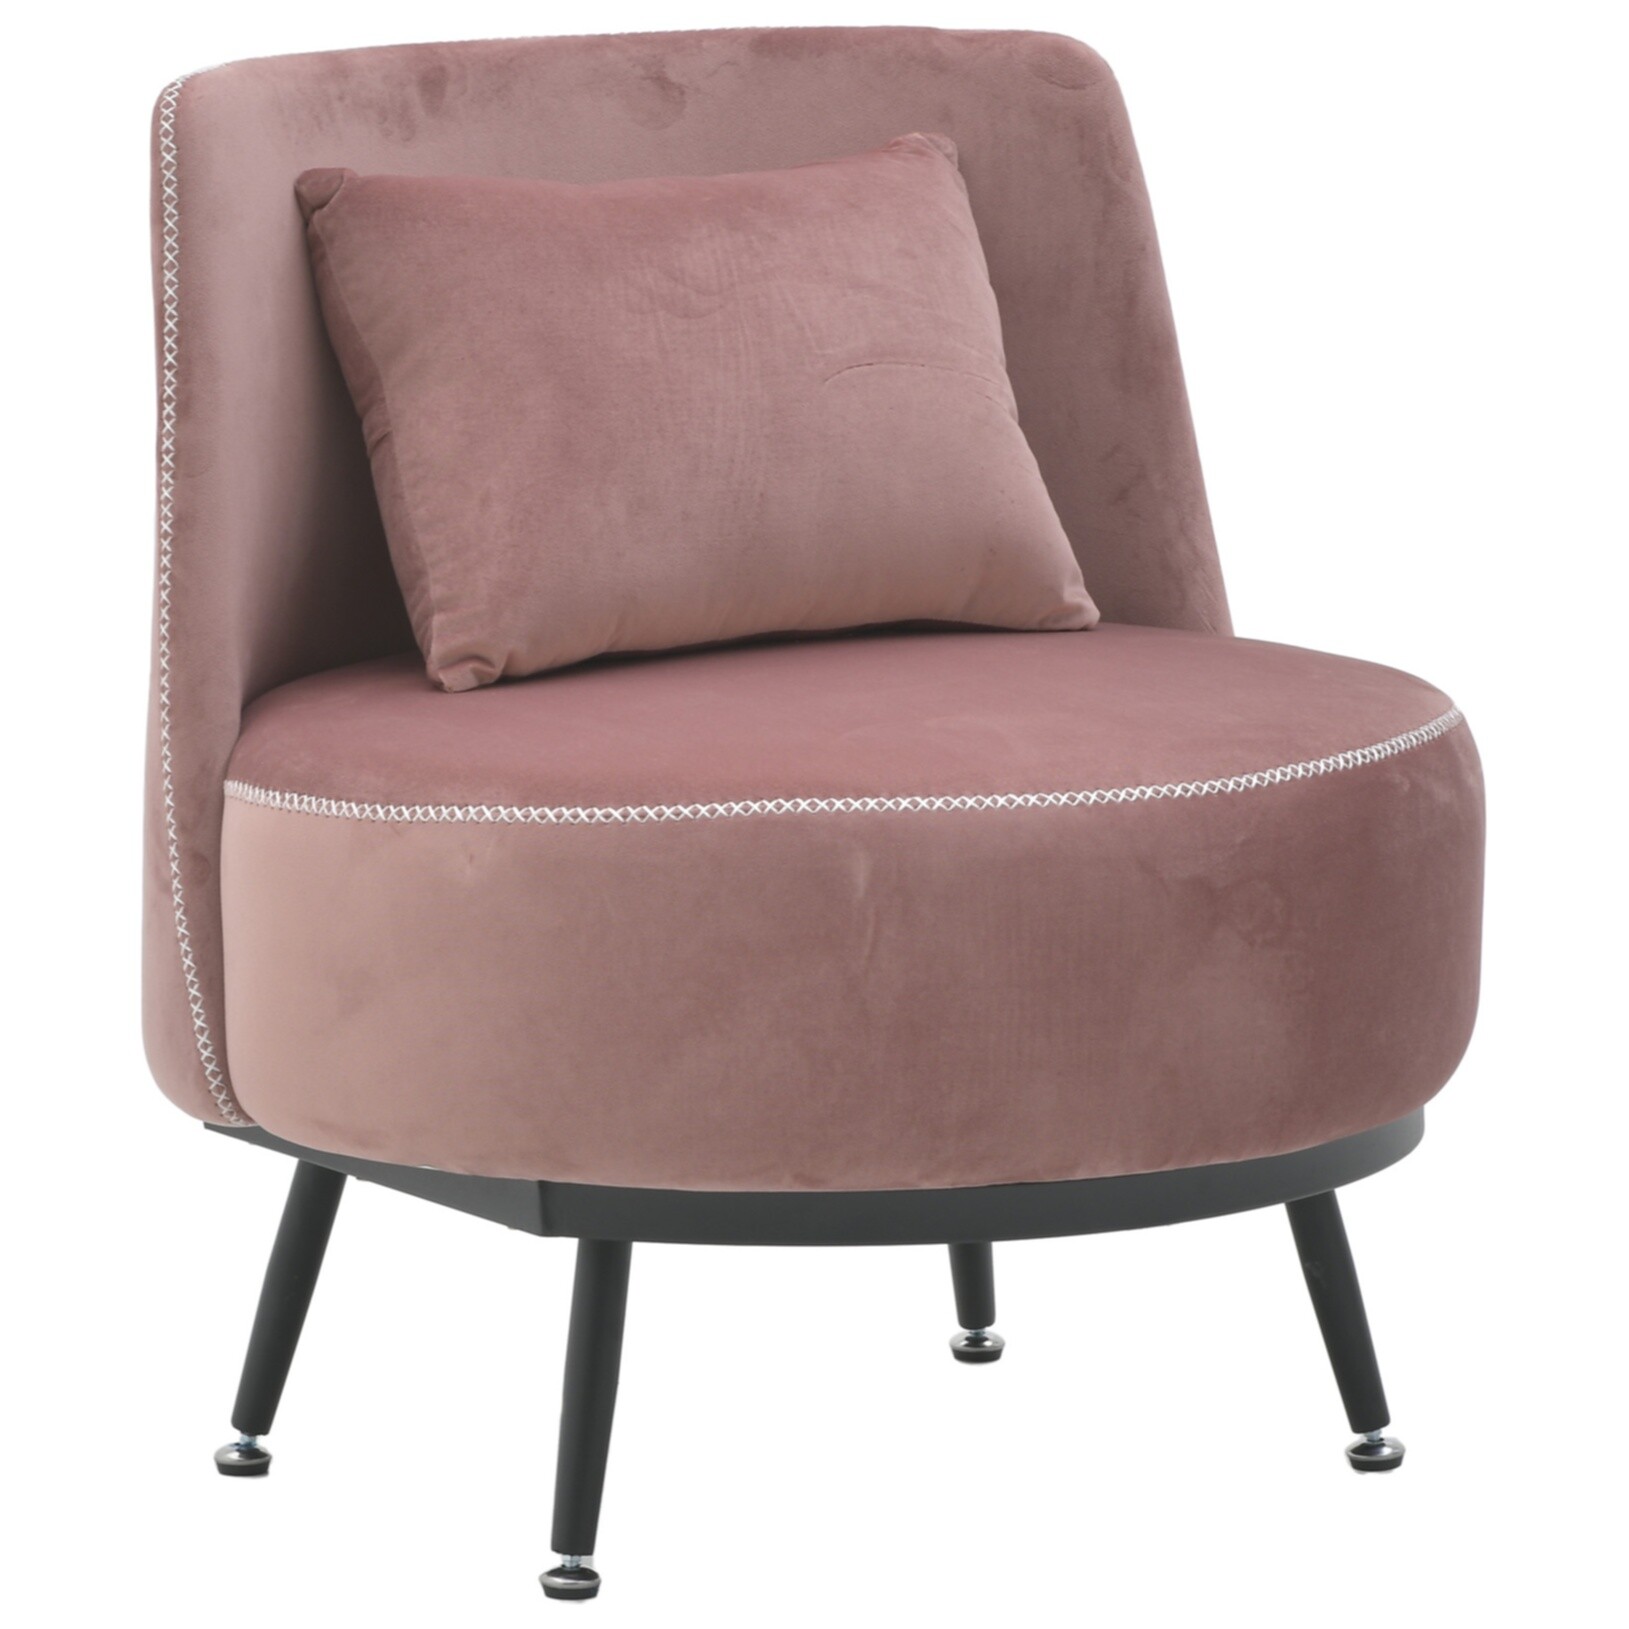 Кресло с мягкой спинкой на металлических ножках розовое